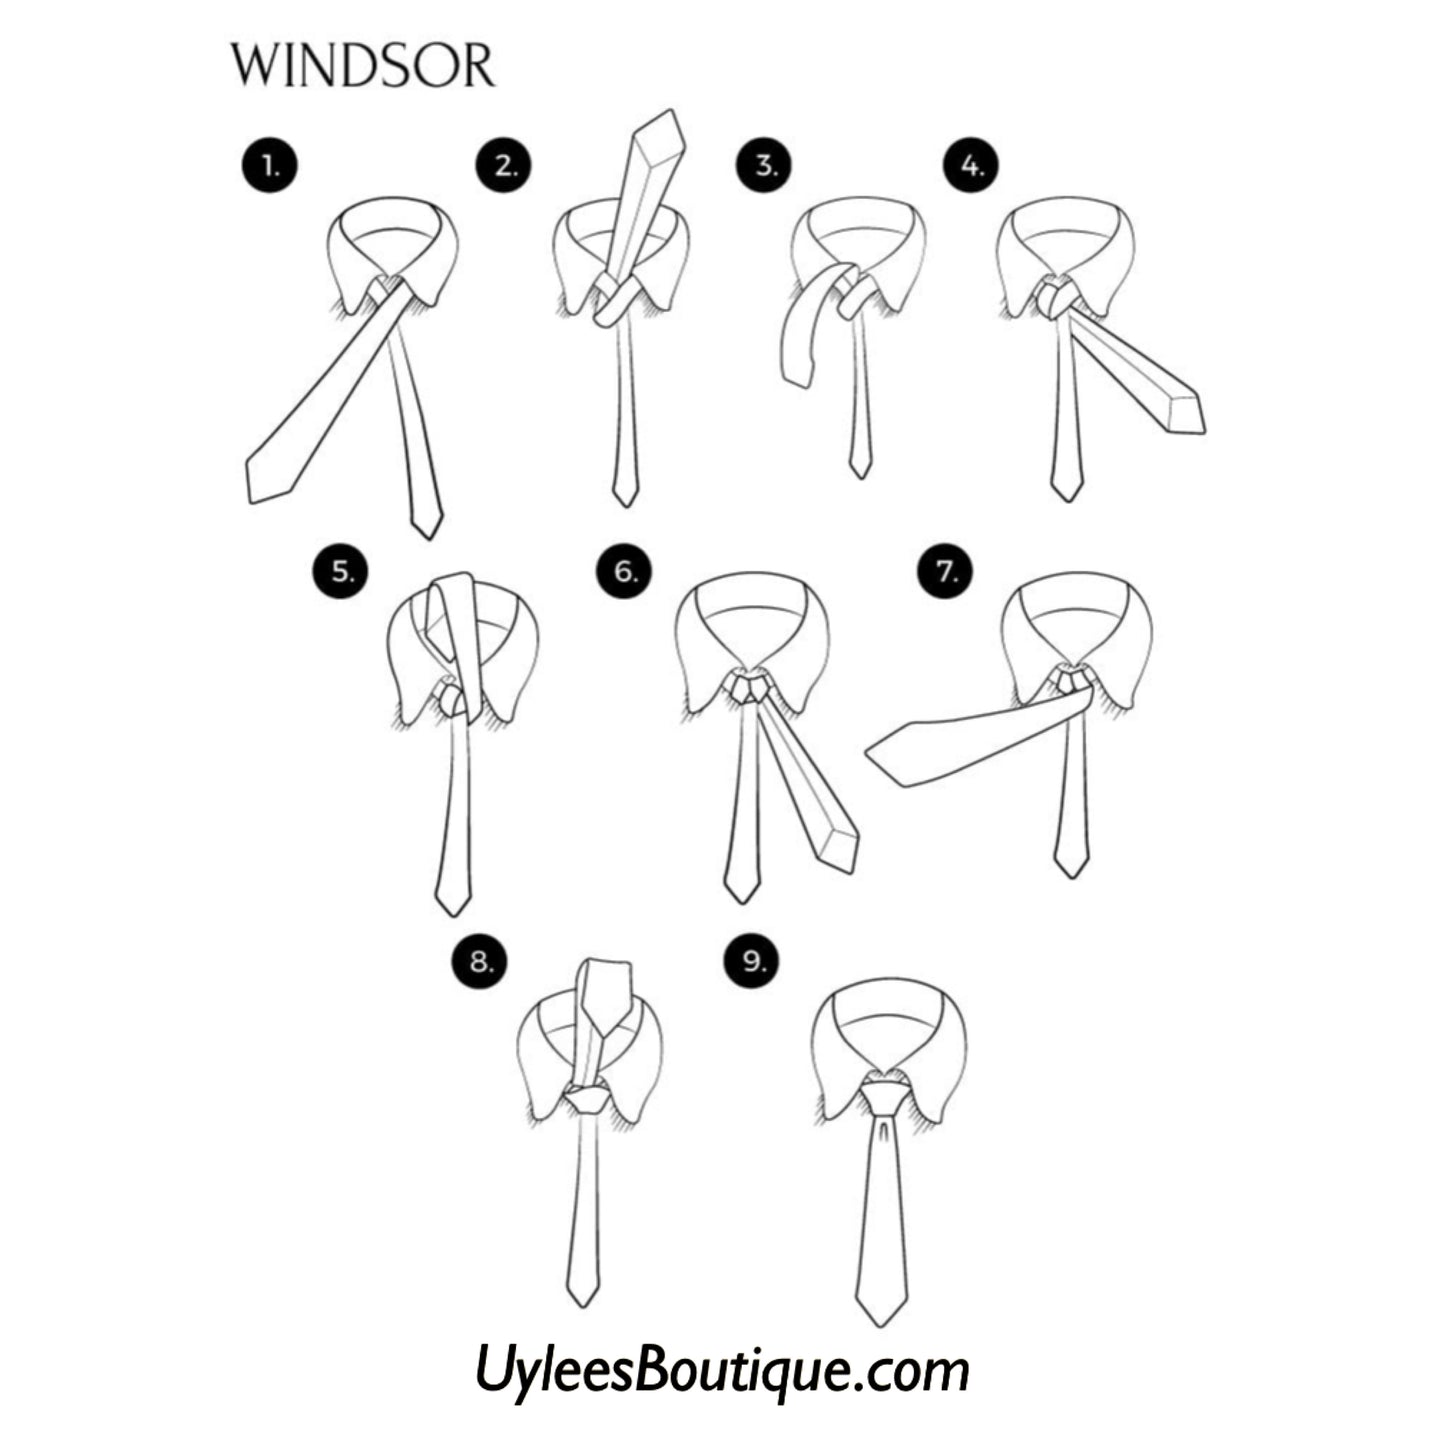 Men’s Silk Coordinated Tie Set - Brown Plaid